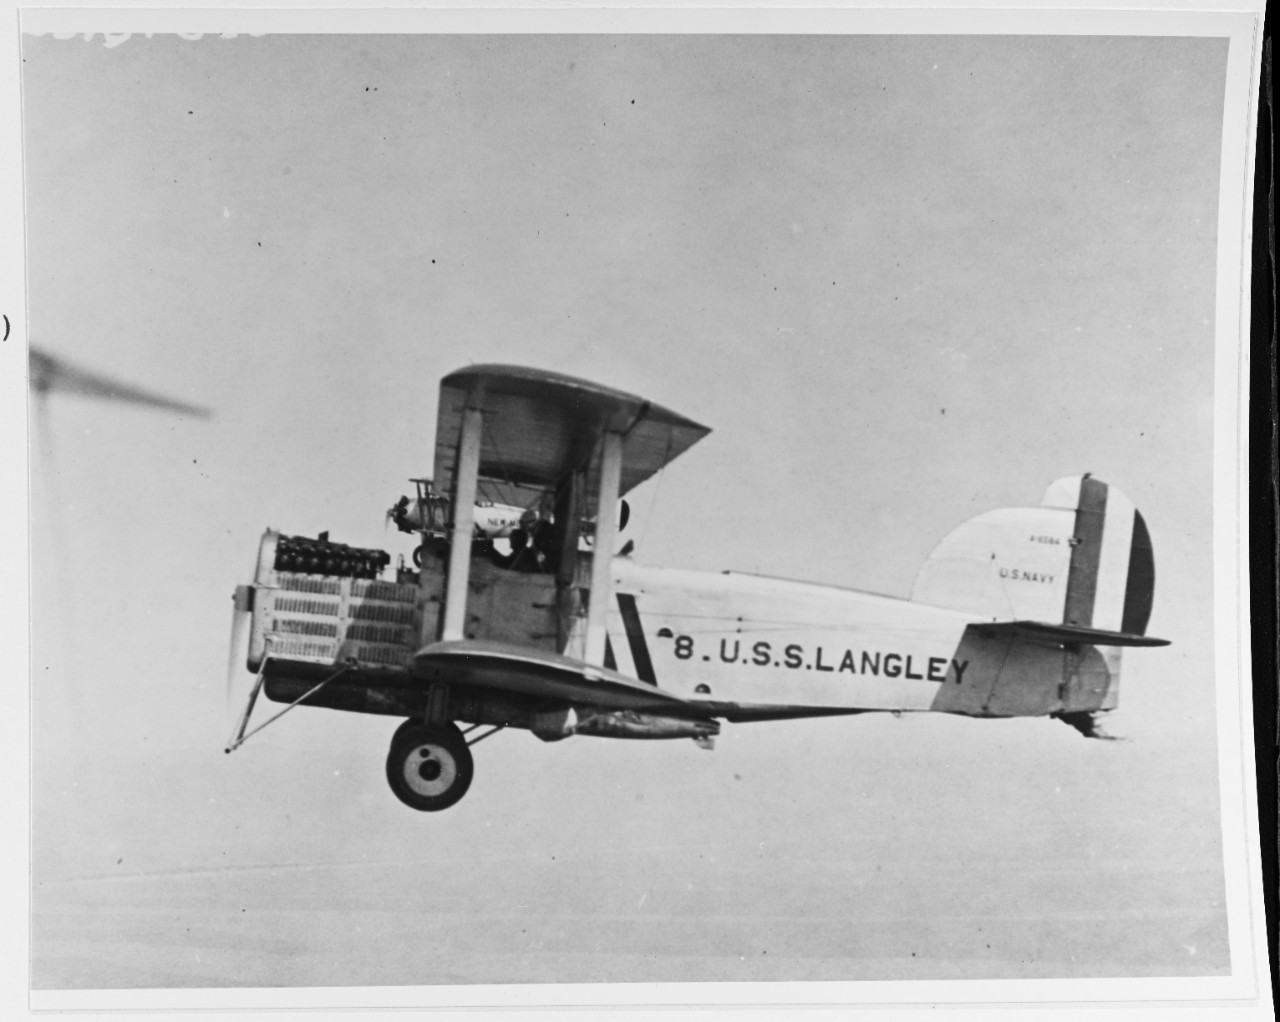 Douglas (L.W.F.) DT-2 (Bu. no. A-6584)